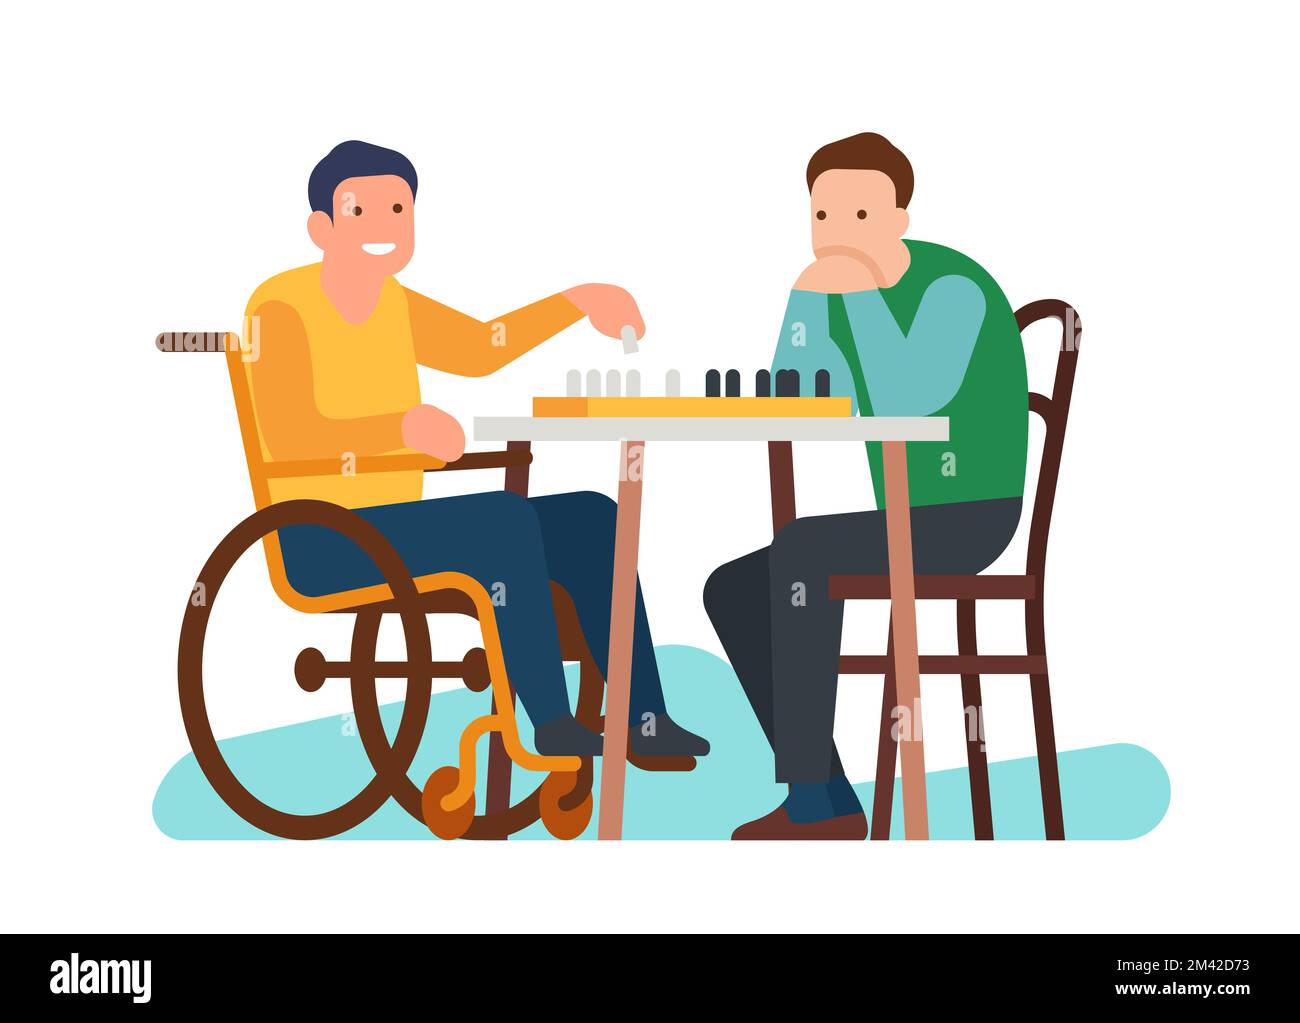 Garçon handicapé jouant aux échecs avec un ami. Joueur handicapé à l'échiquier. Homme en fauteuil roulant. Jeu de stratégie. Soutien aux personnes handicapées. Blessé Illustration de Vecteur